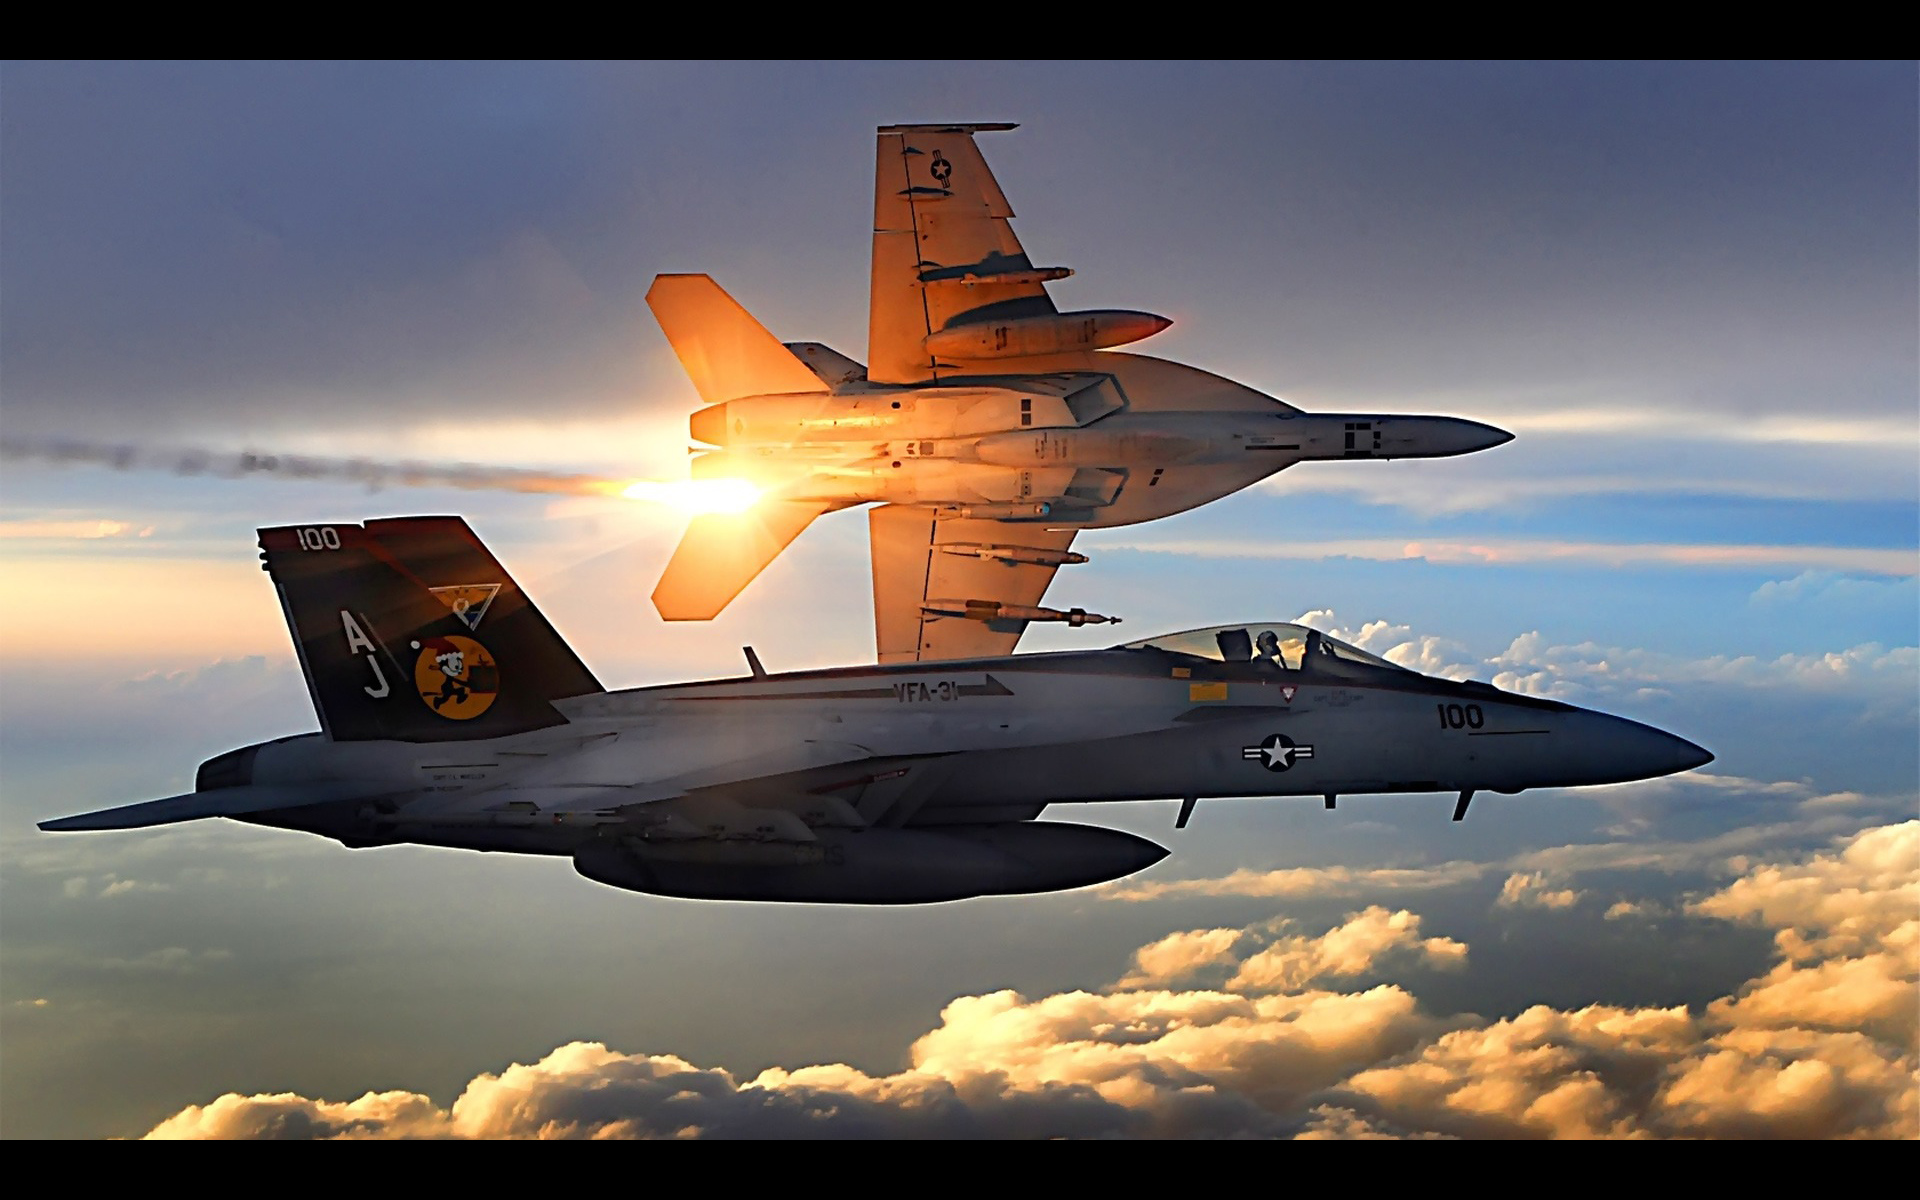 облака, самолет, военный, военно-морской флот, самолеты, транспортные средства, F- 18 Hornet - обои на рабочий стол